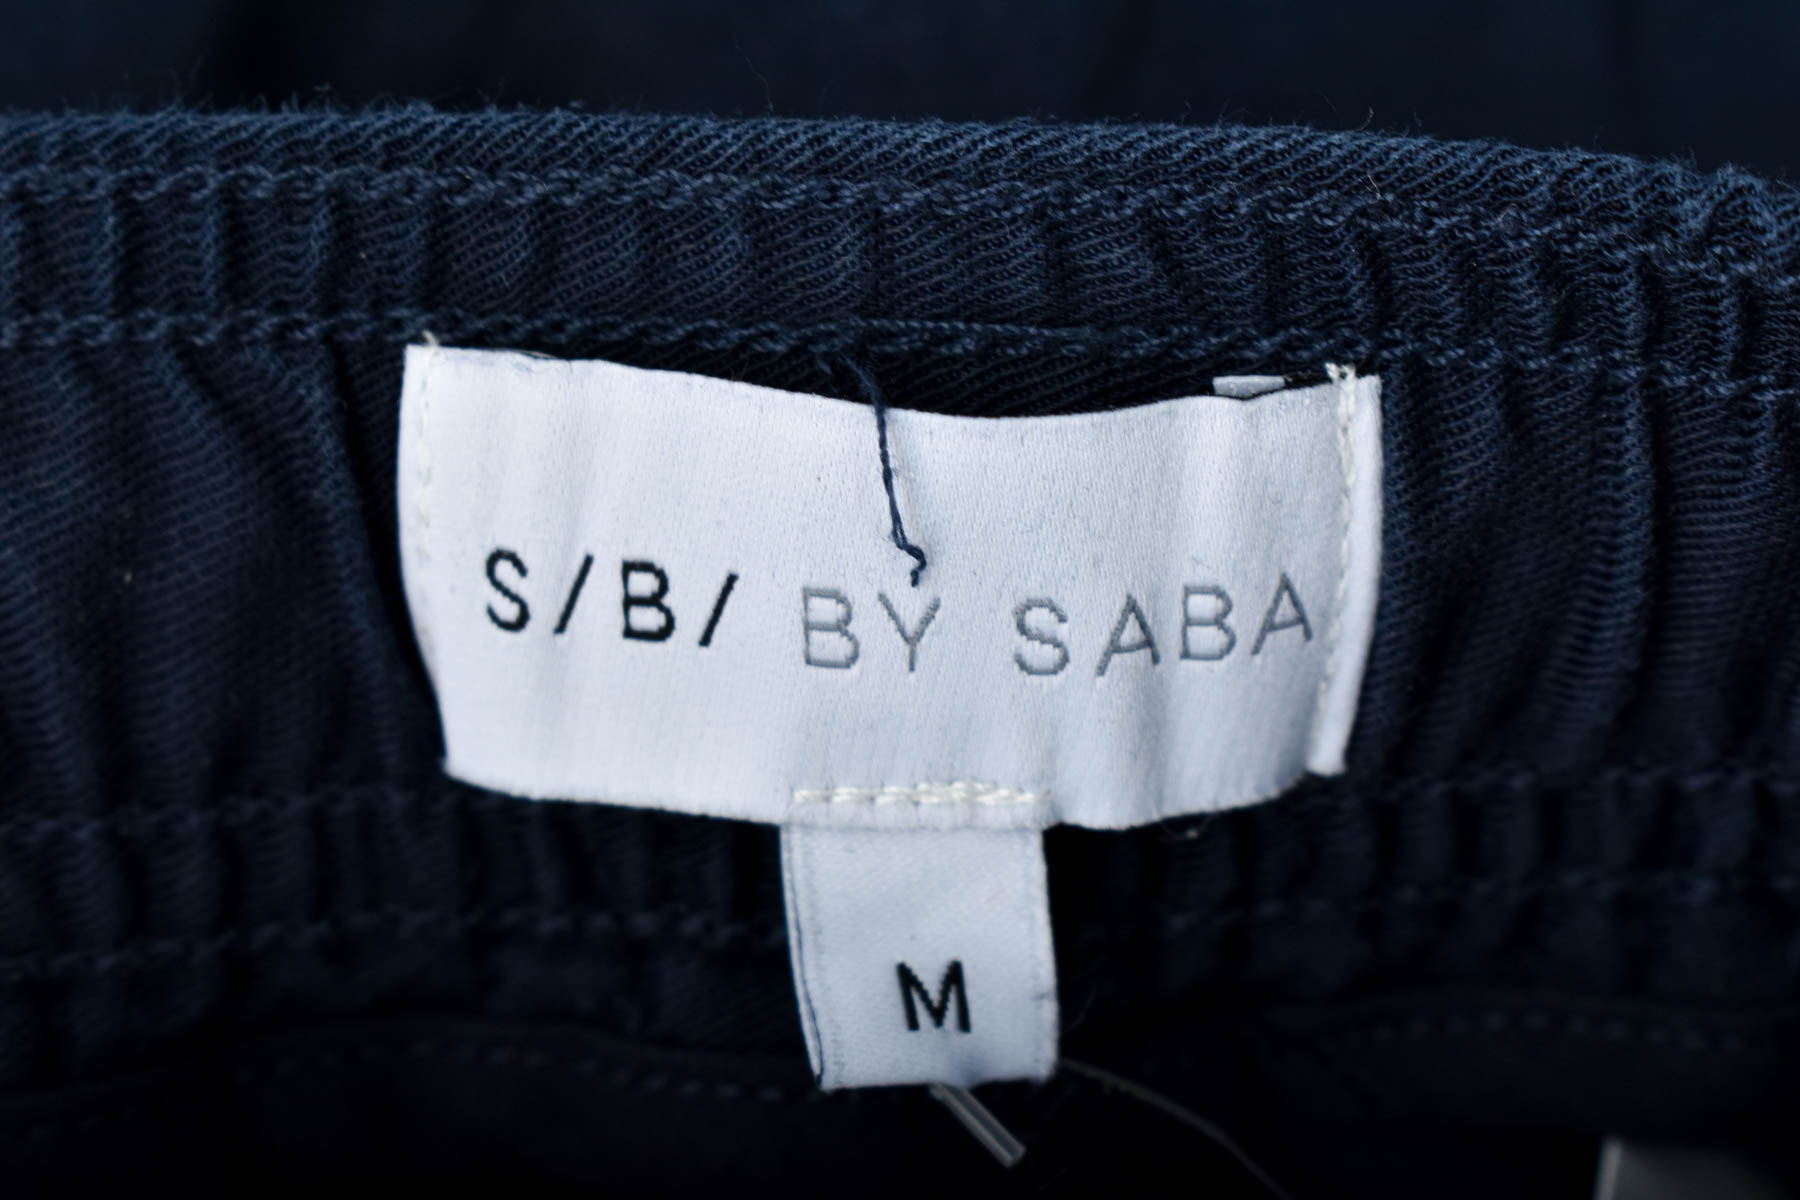 Pantalon pentru bărbați - S/B/ BY SABA - 2